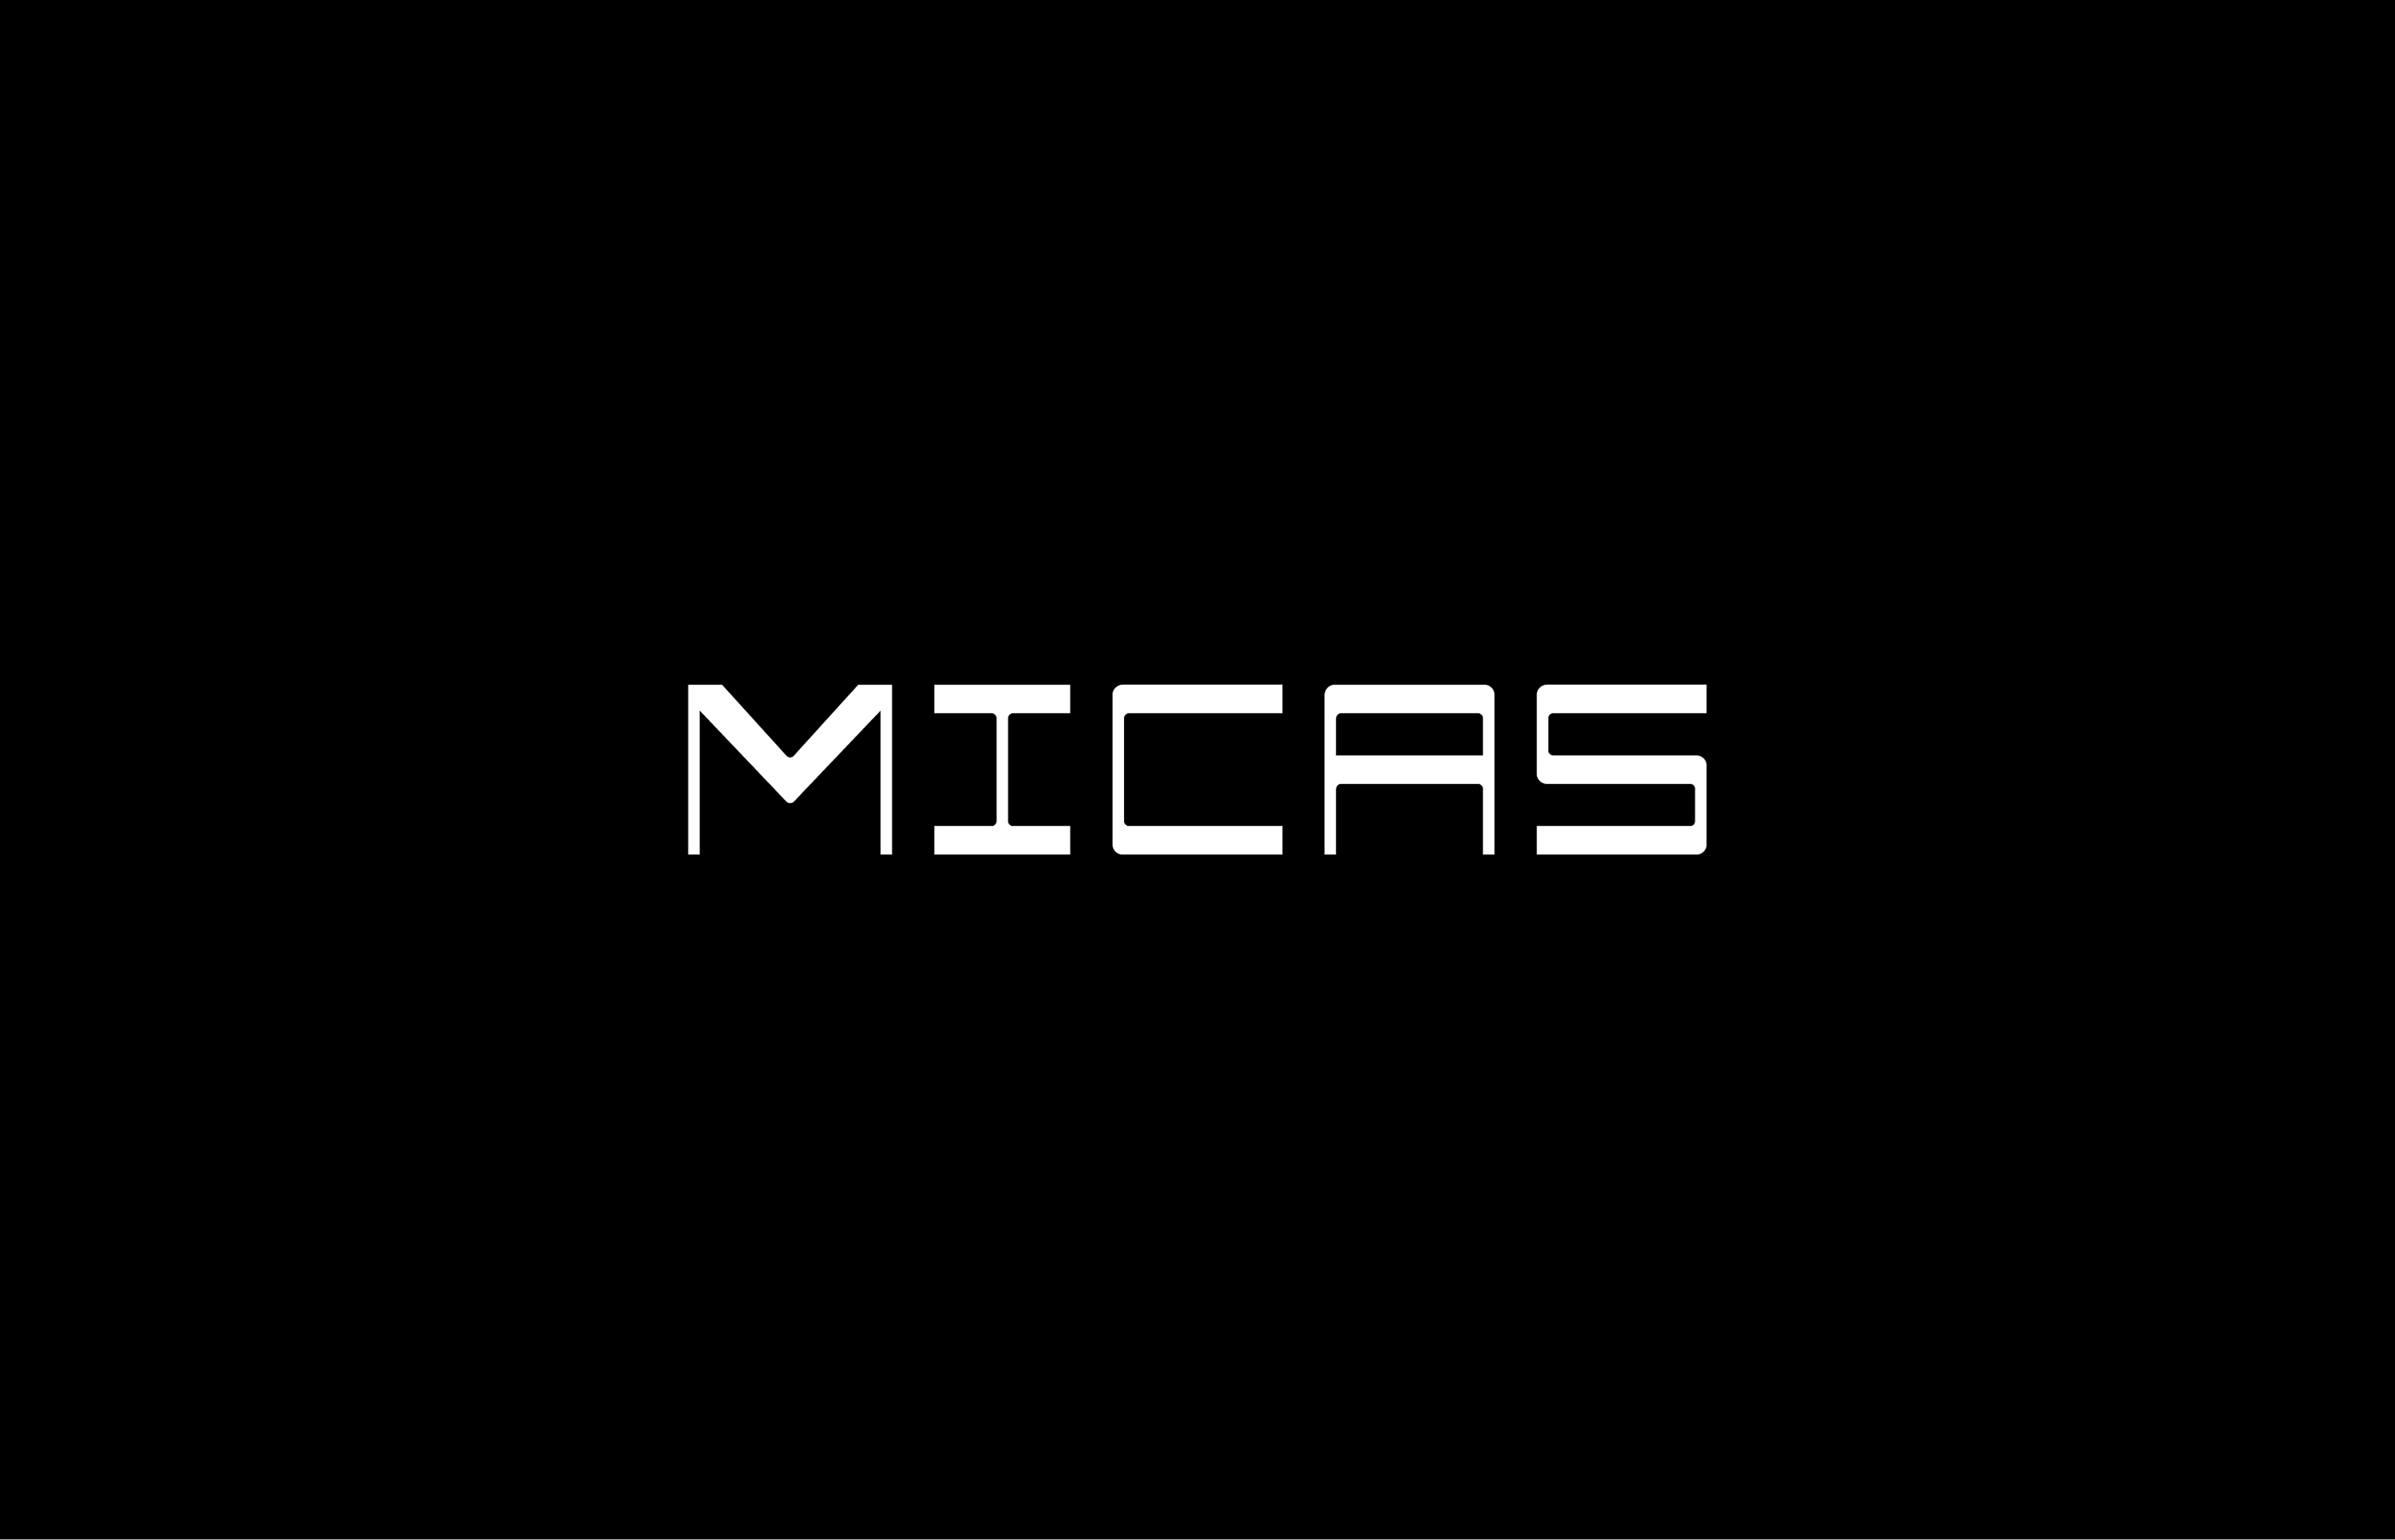 MICAS - Malta International Contemporary Art Space on Behanceeee44492265469.5e4a3e8a34a2b.png